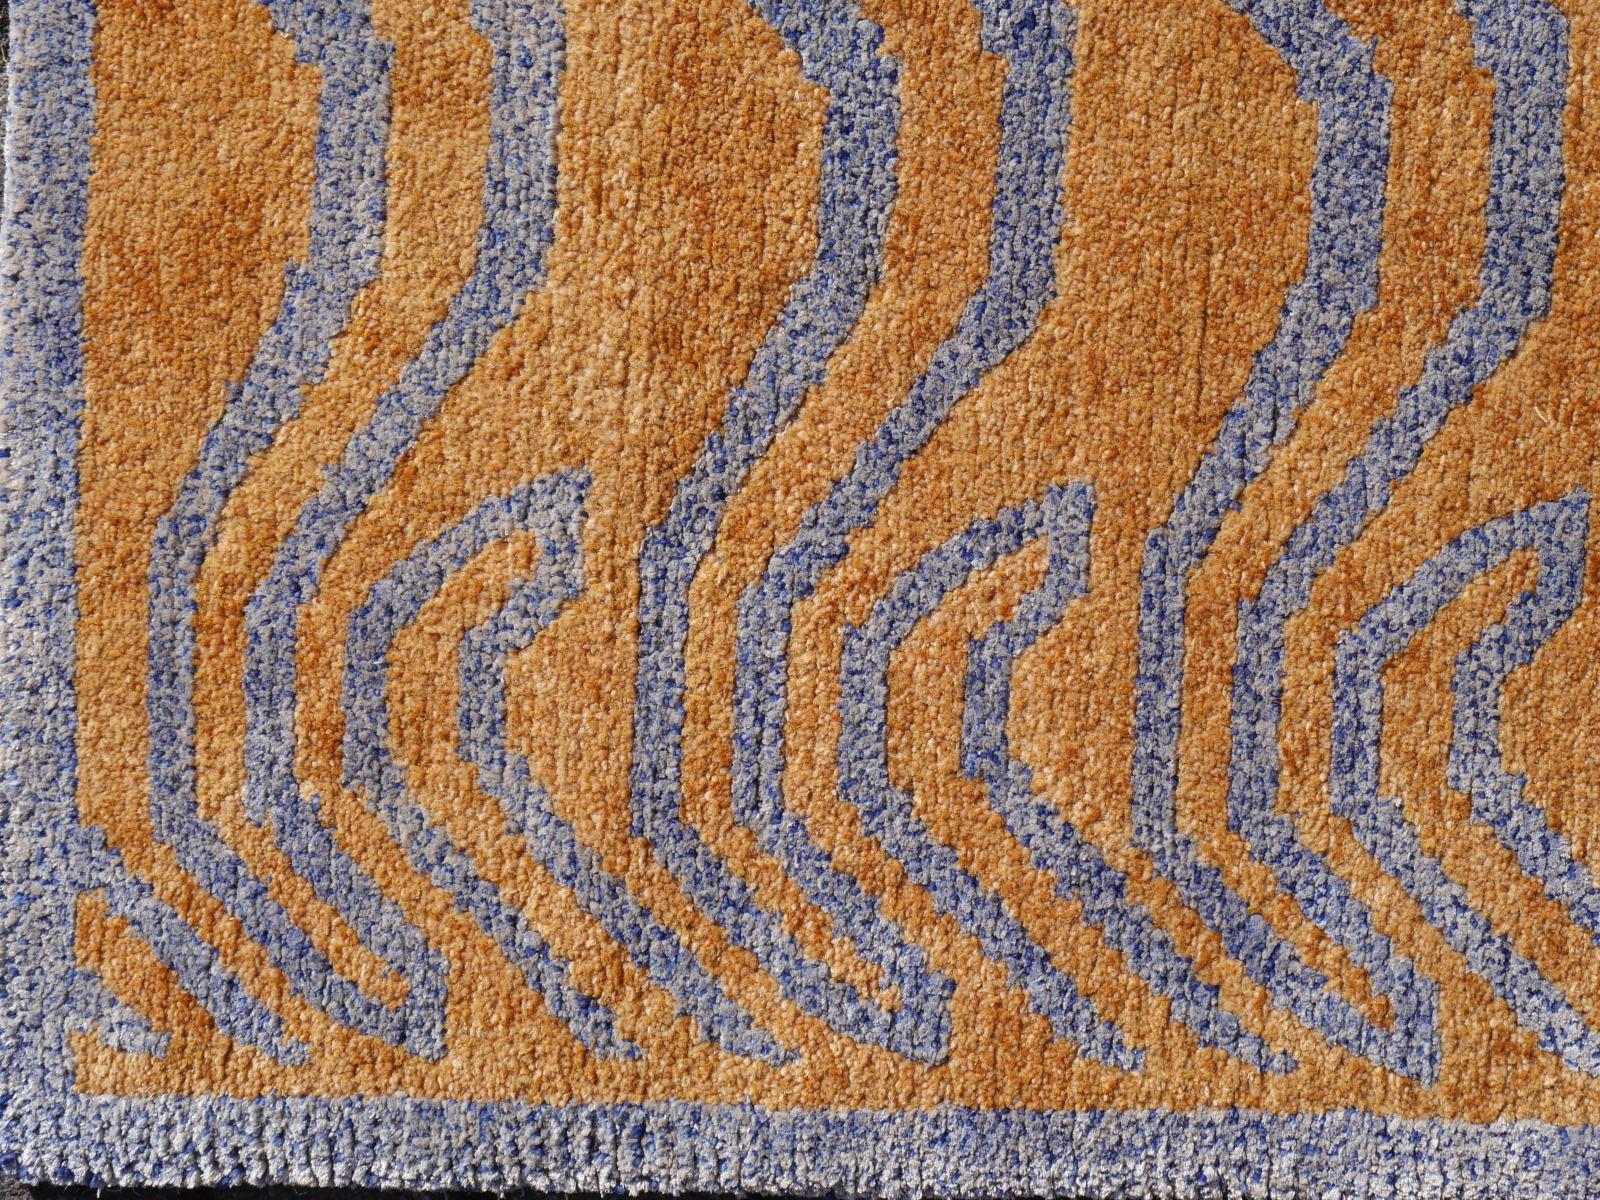 Ein tibetischer Tiger-Teppich, handgeknüpft in Nepal, Flor aus Seide und Wolle.

Dieses traditionelle Tiger-Muster findet sich typischerweise auf antiken Teppichen, die Khaden genannt werden. Er beschreibt einen kleinen Teppich von etwa 3 x 6 Fuß,